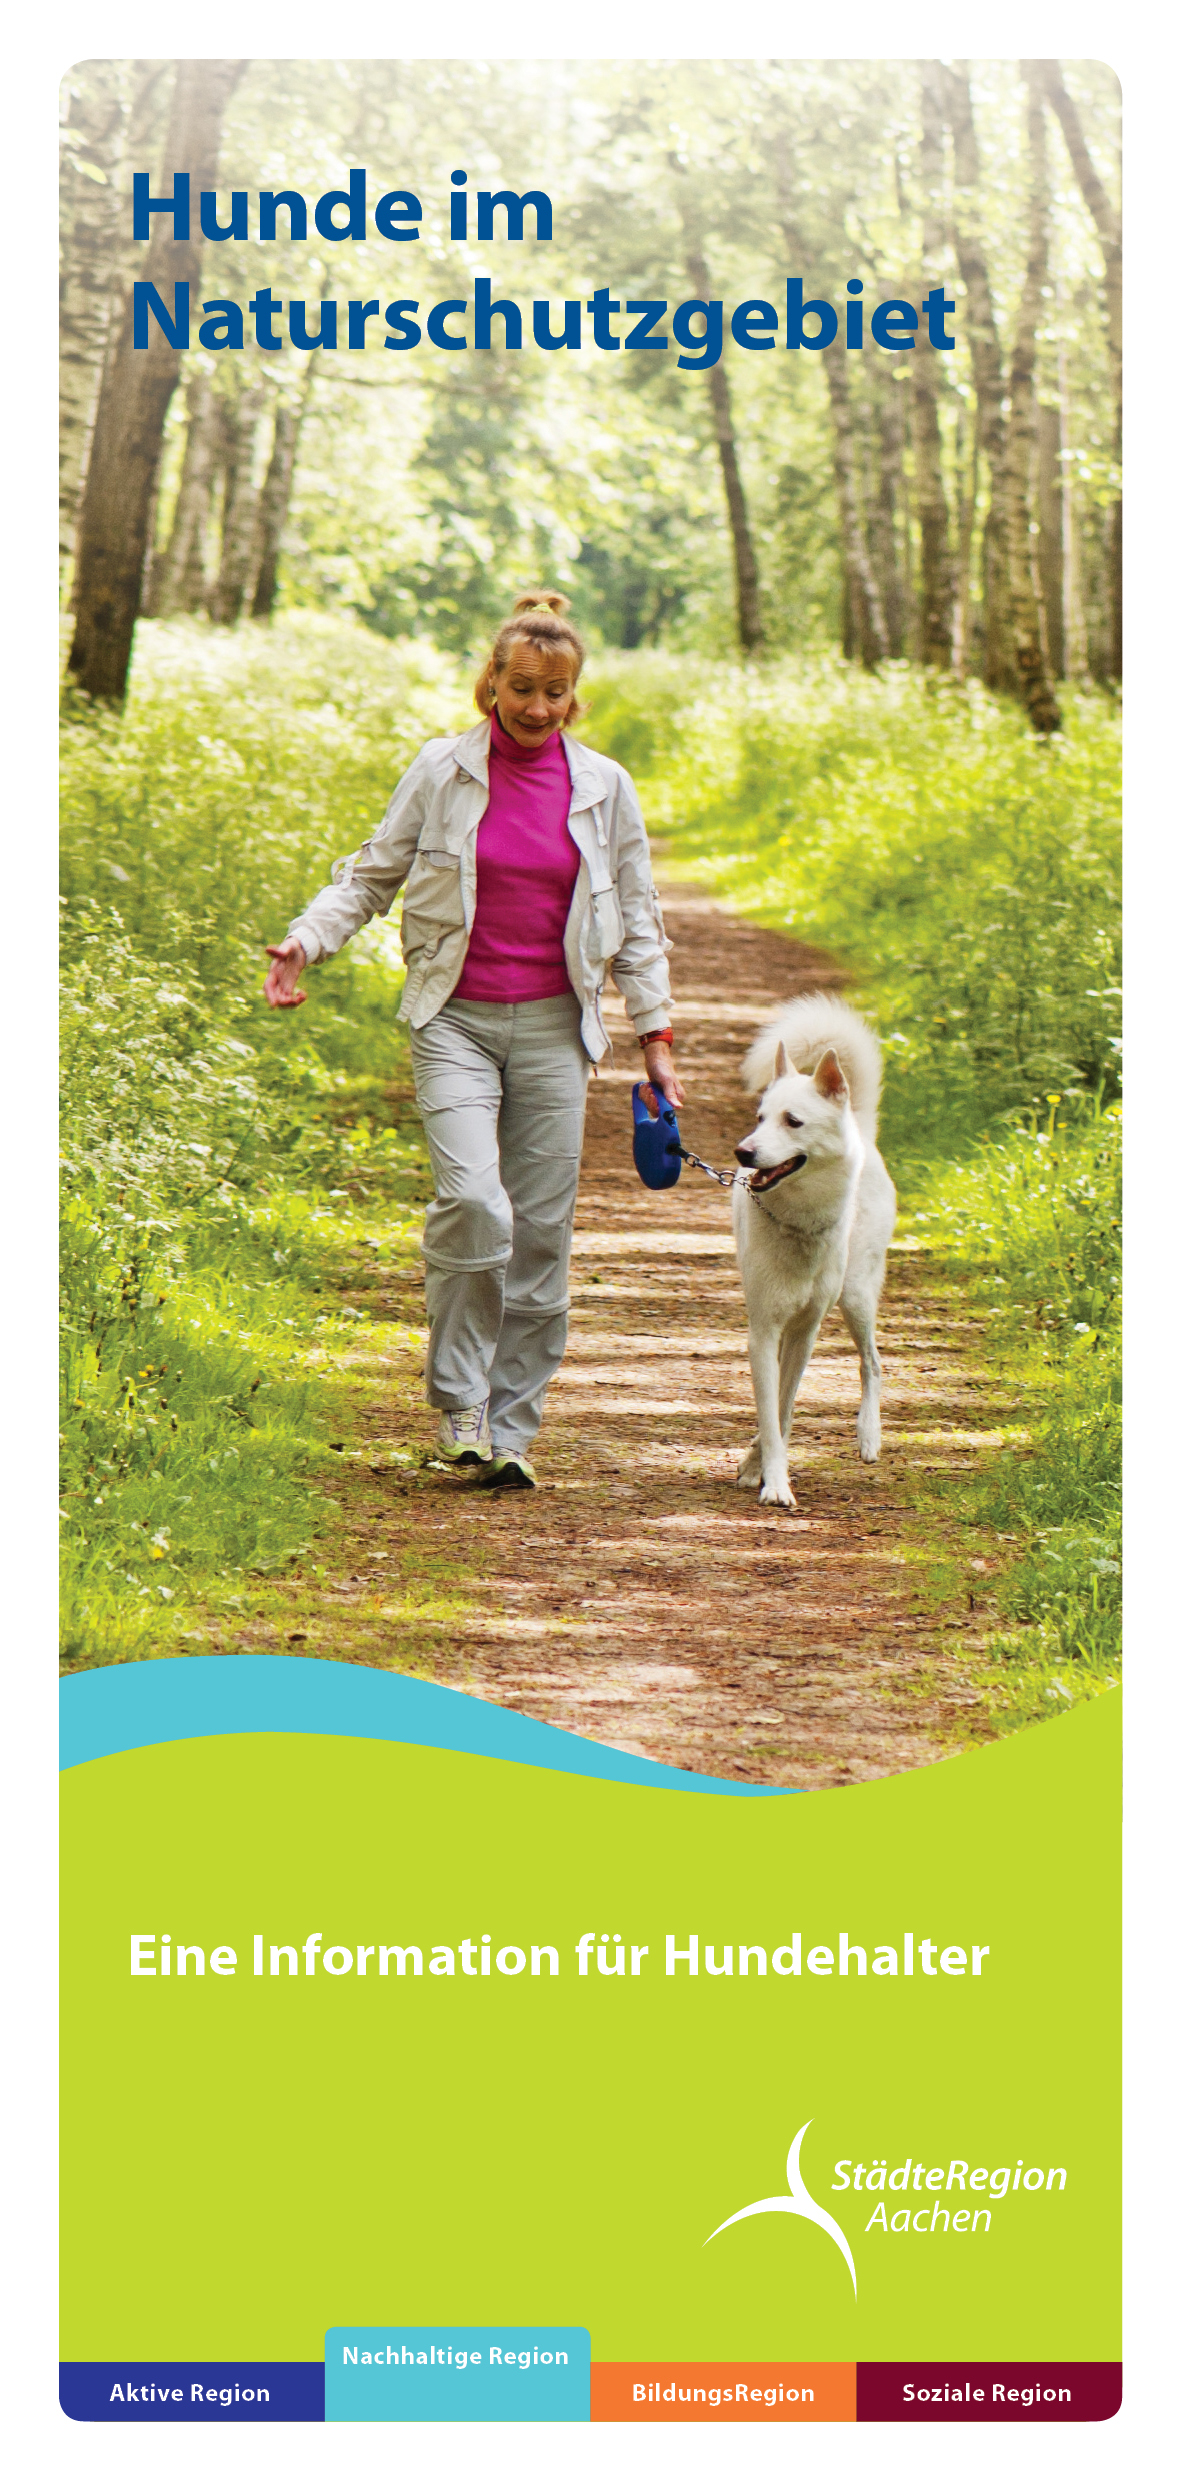 Deckblatt vom Flyer Hunde im Naturschutzgebiet, eine Frau die mit Ihrem Hund im Wald spazieren geht